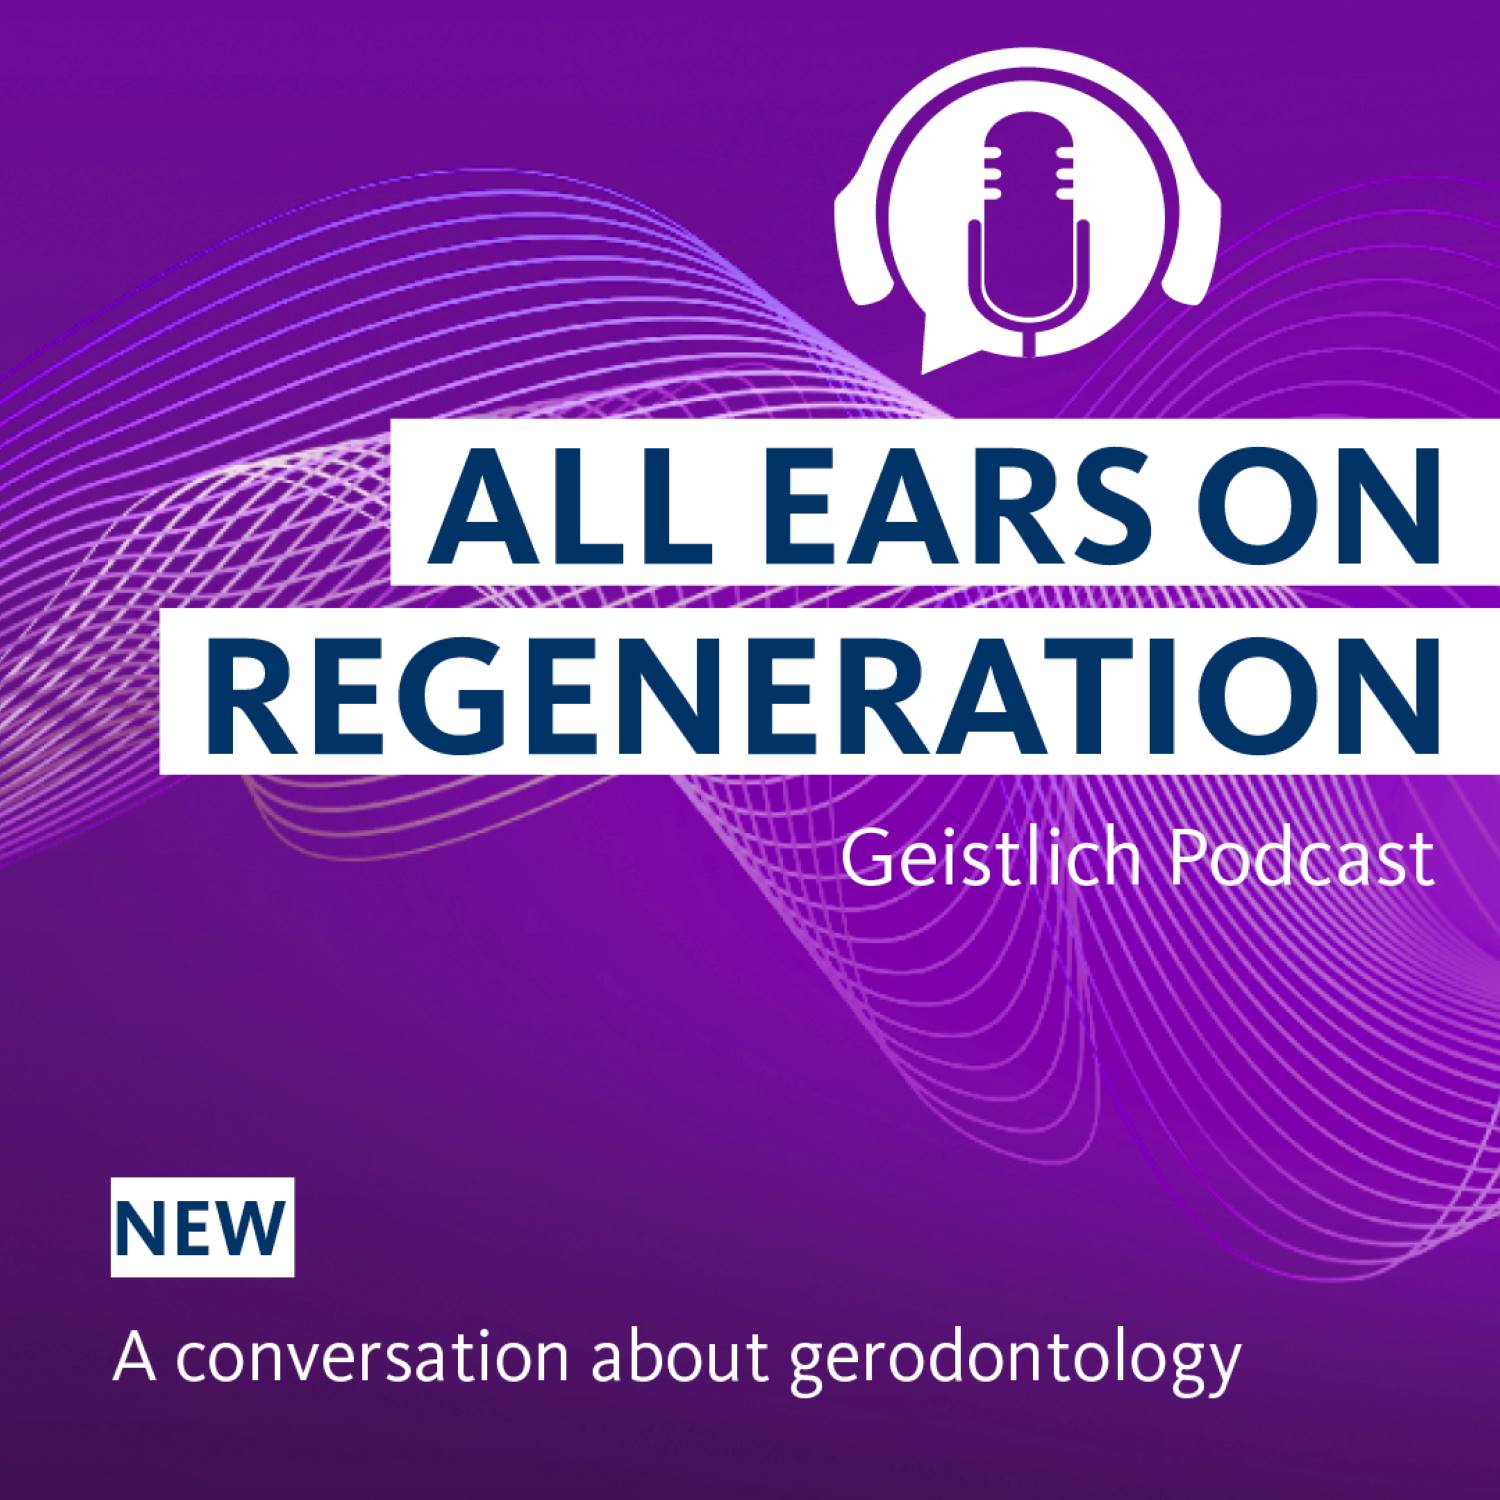 Artwork for podcast All Ears on Regeneration